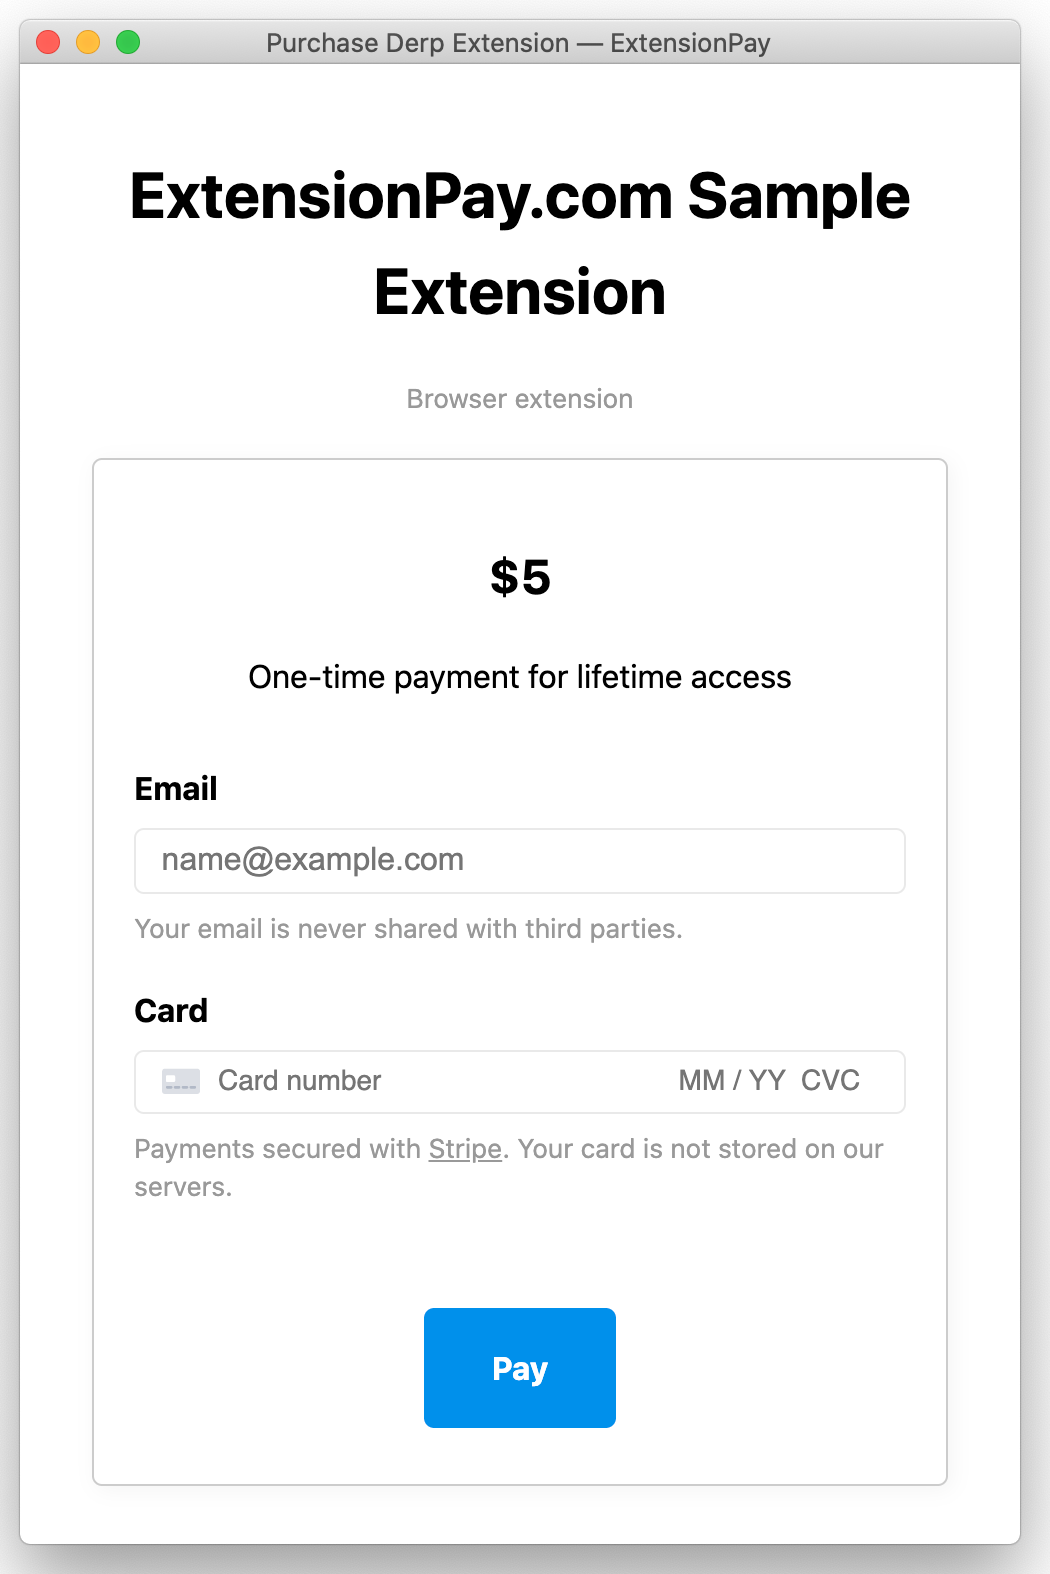 Sample extension payment screen screenshot